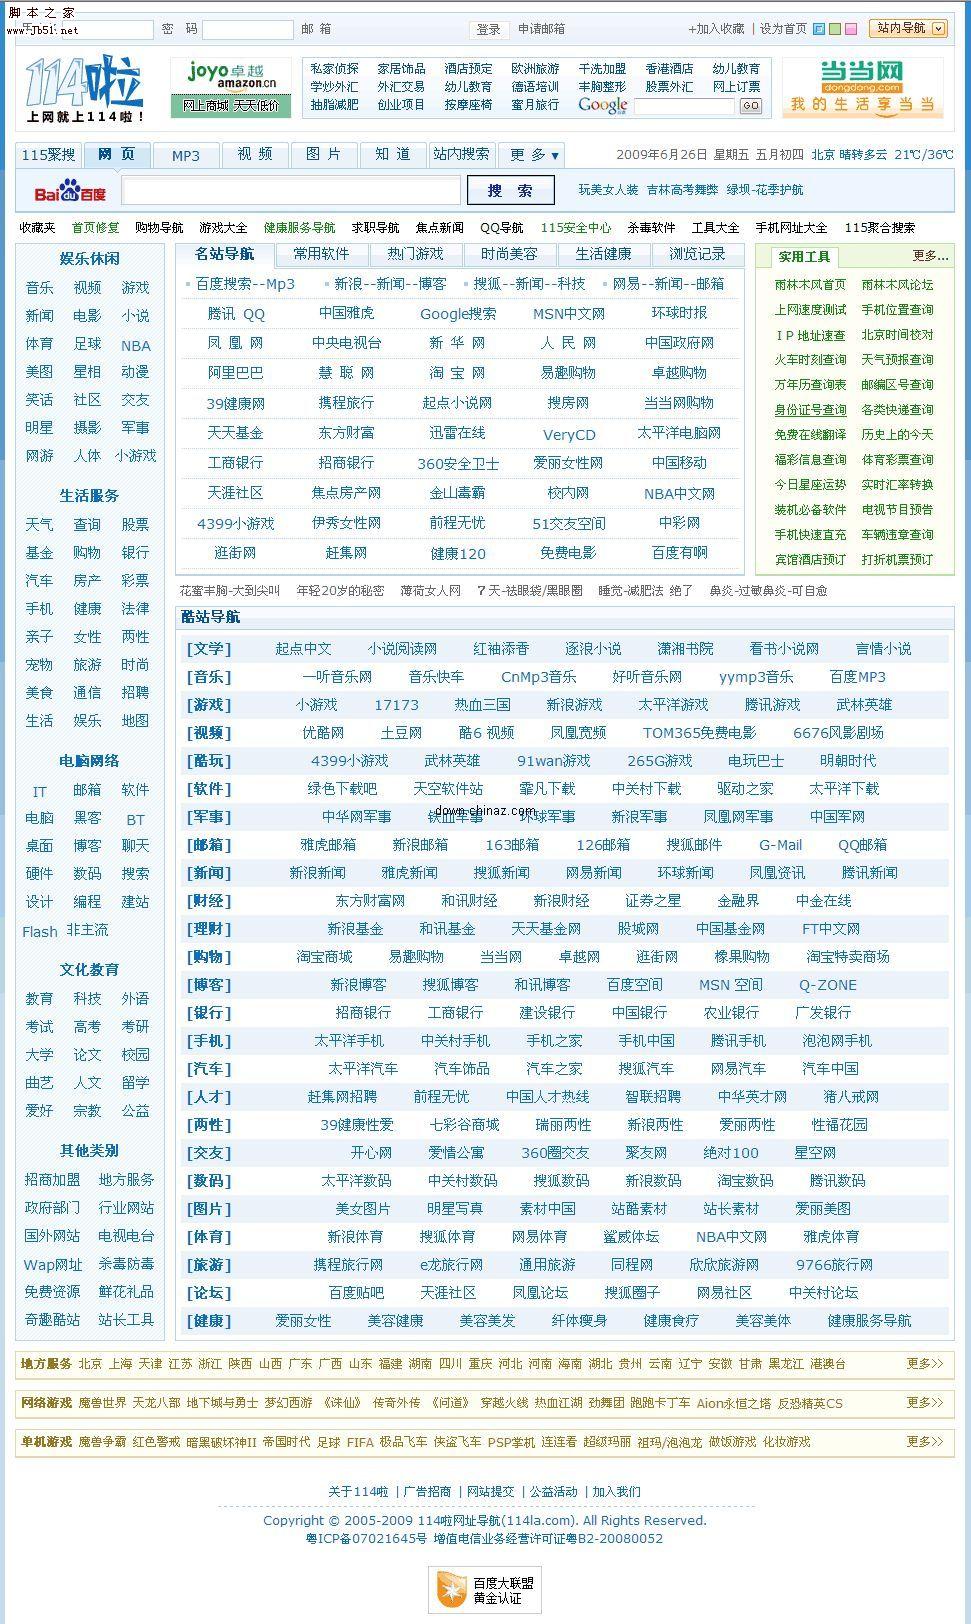 114啦php网址导航建站系统 1.15 GBK 20130613